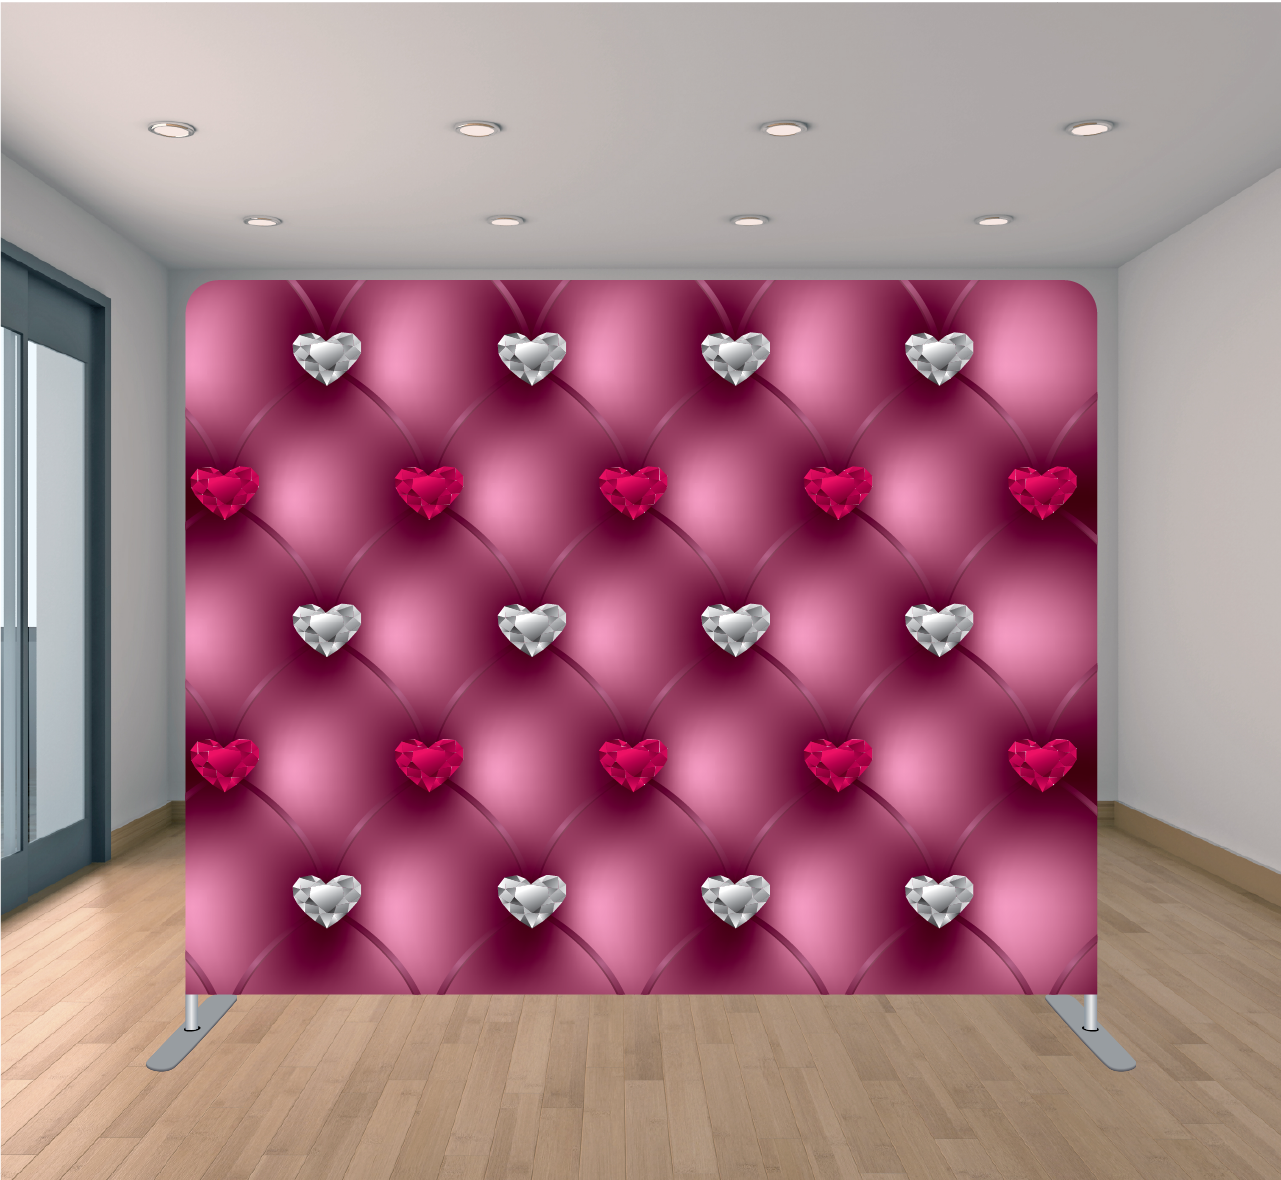 8x8 Pillowcase Tension Backdrop- Pink Diamond Heart